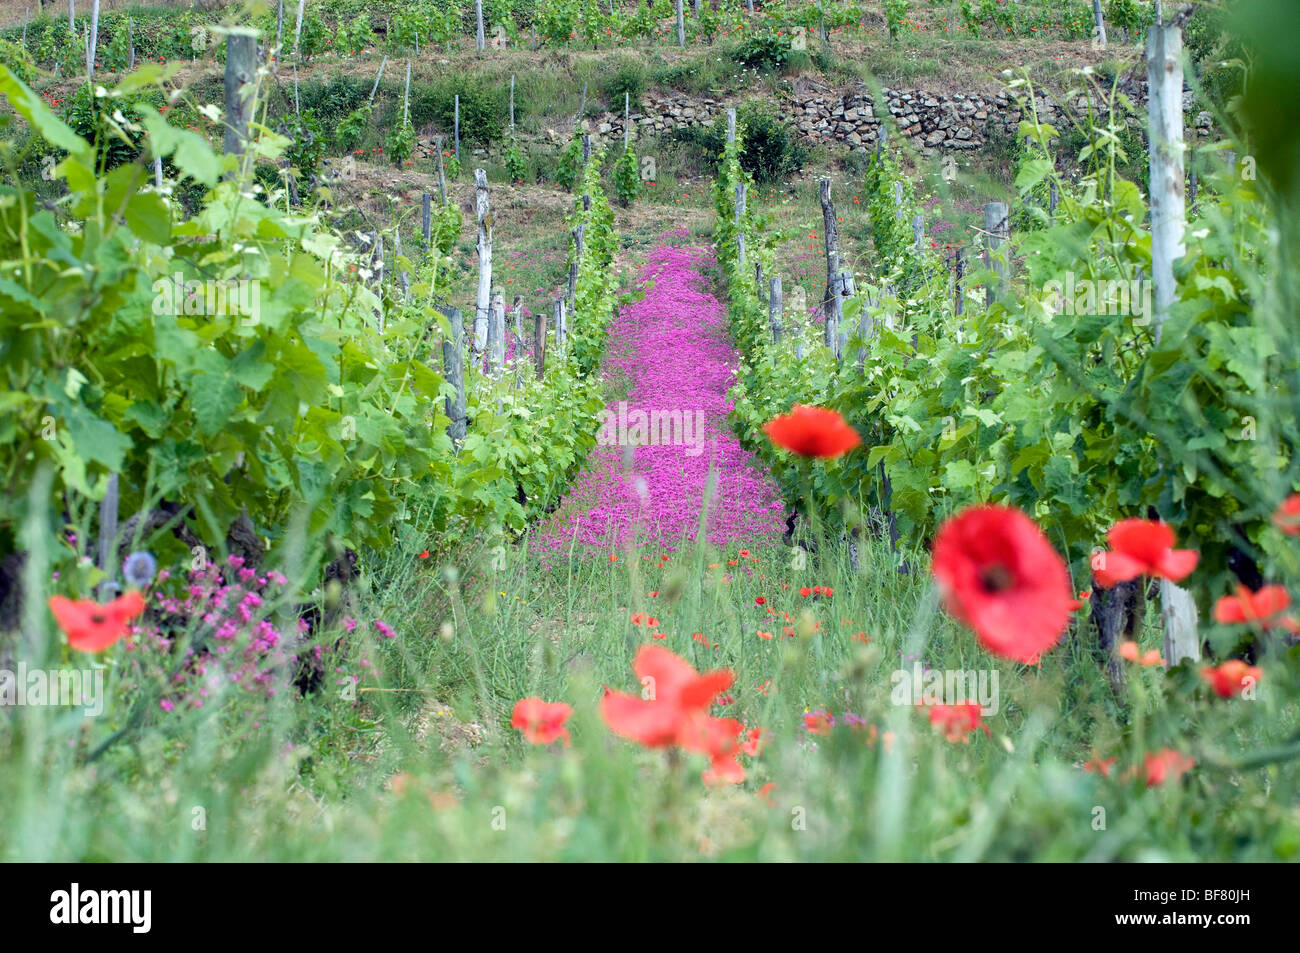 Cornas (07) : the vineyards Stock Photo